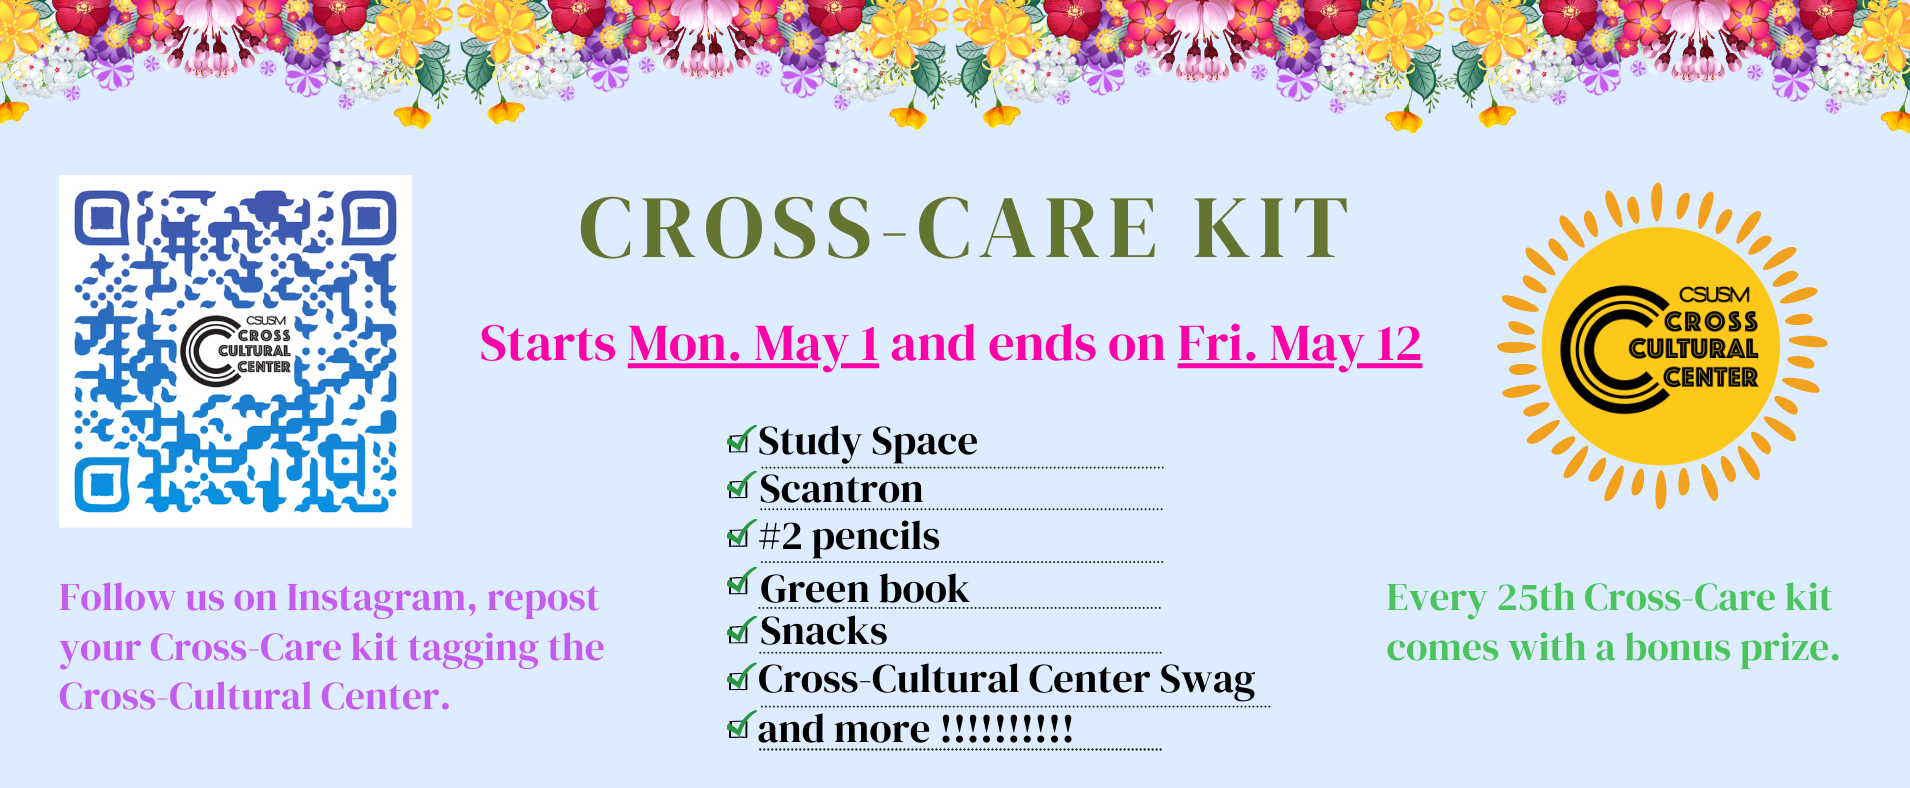 Cross-Care Kit - Monday, May 1 - Friday, May 12